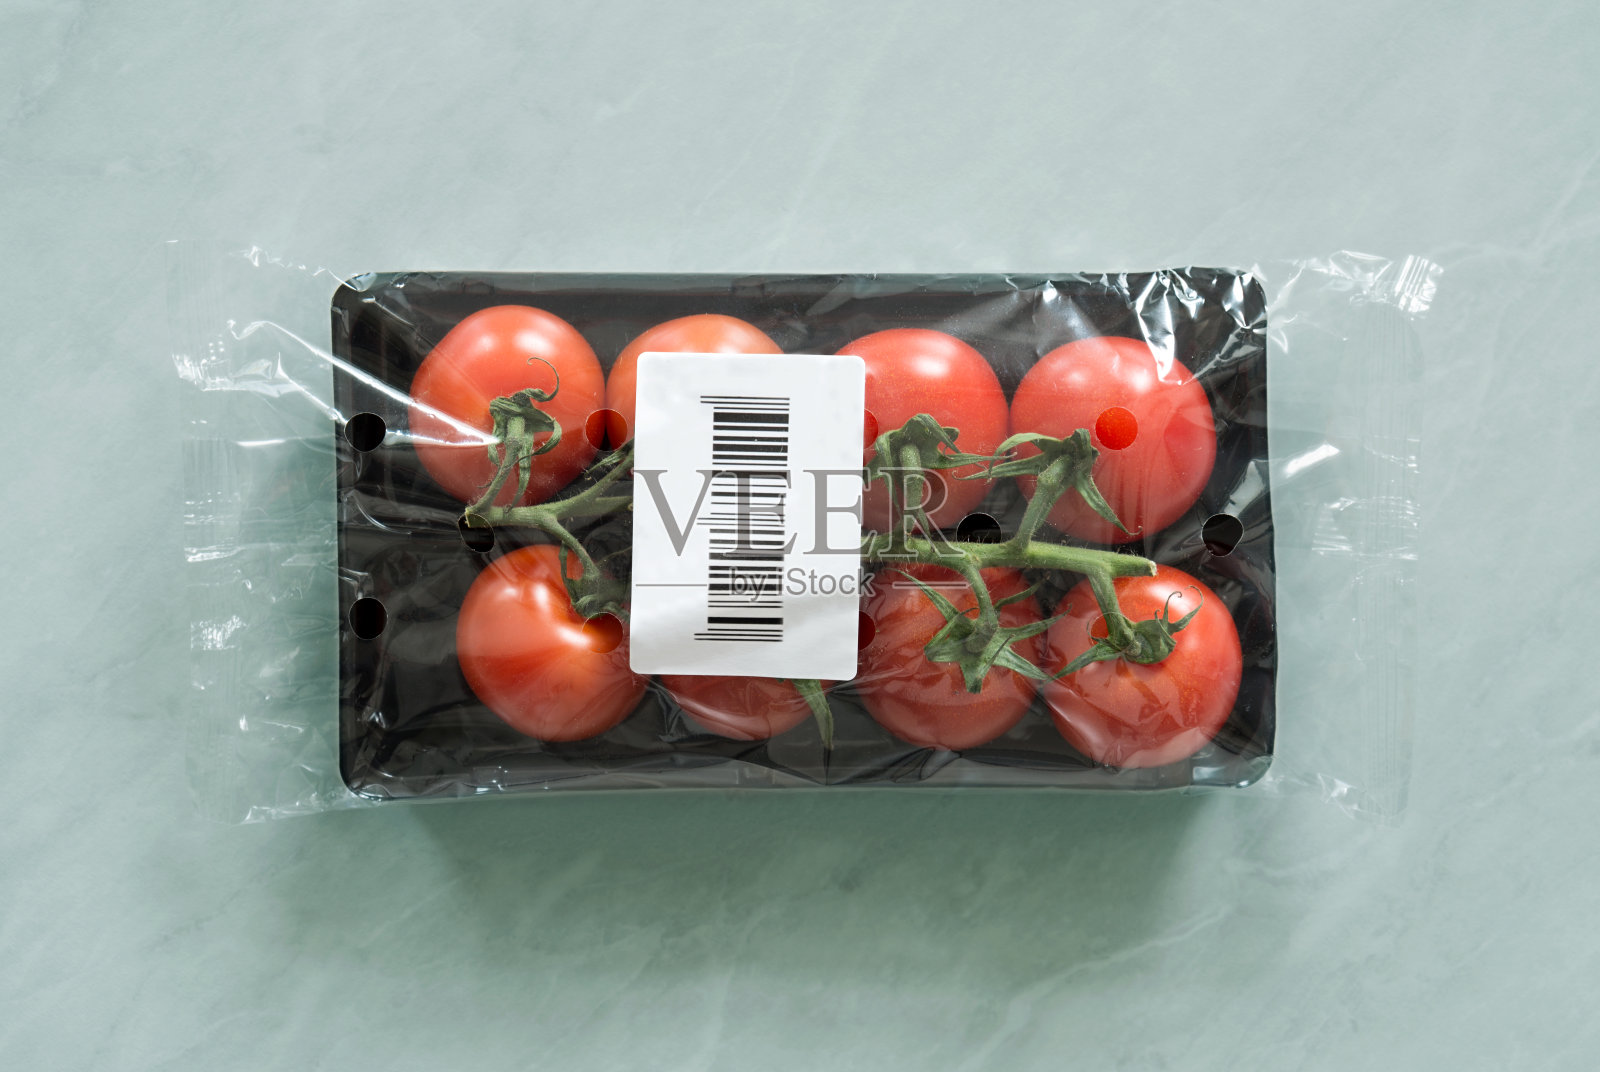 新鲜的有机西红柿在市场包装内与条形码标签照片摄影图片